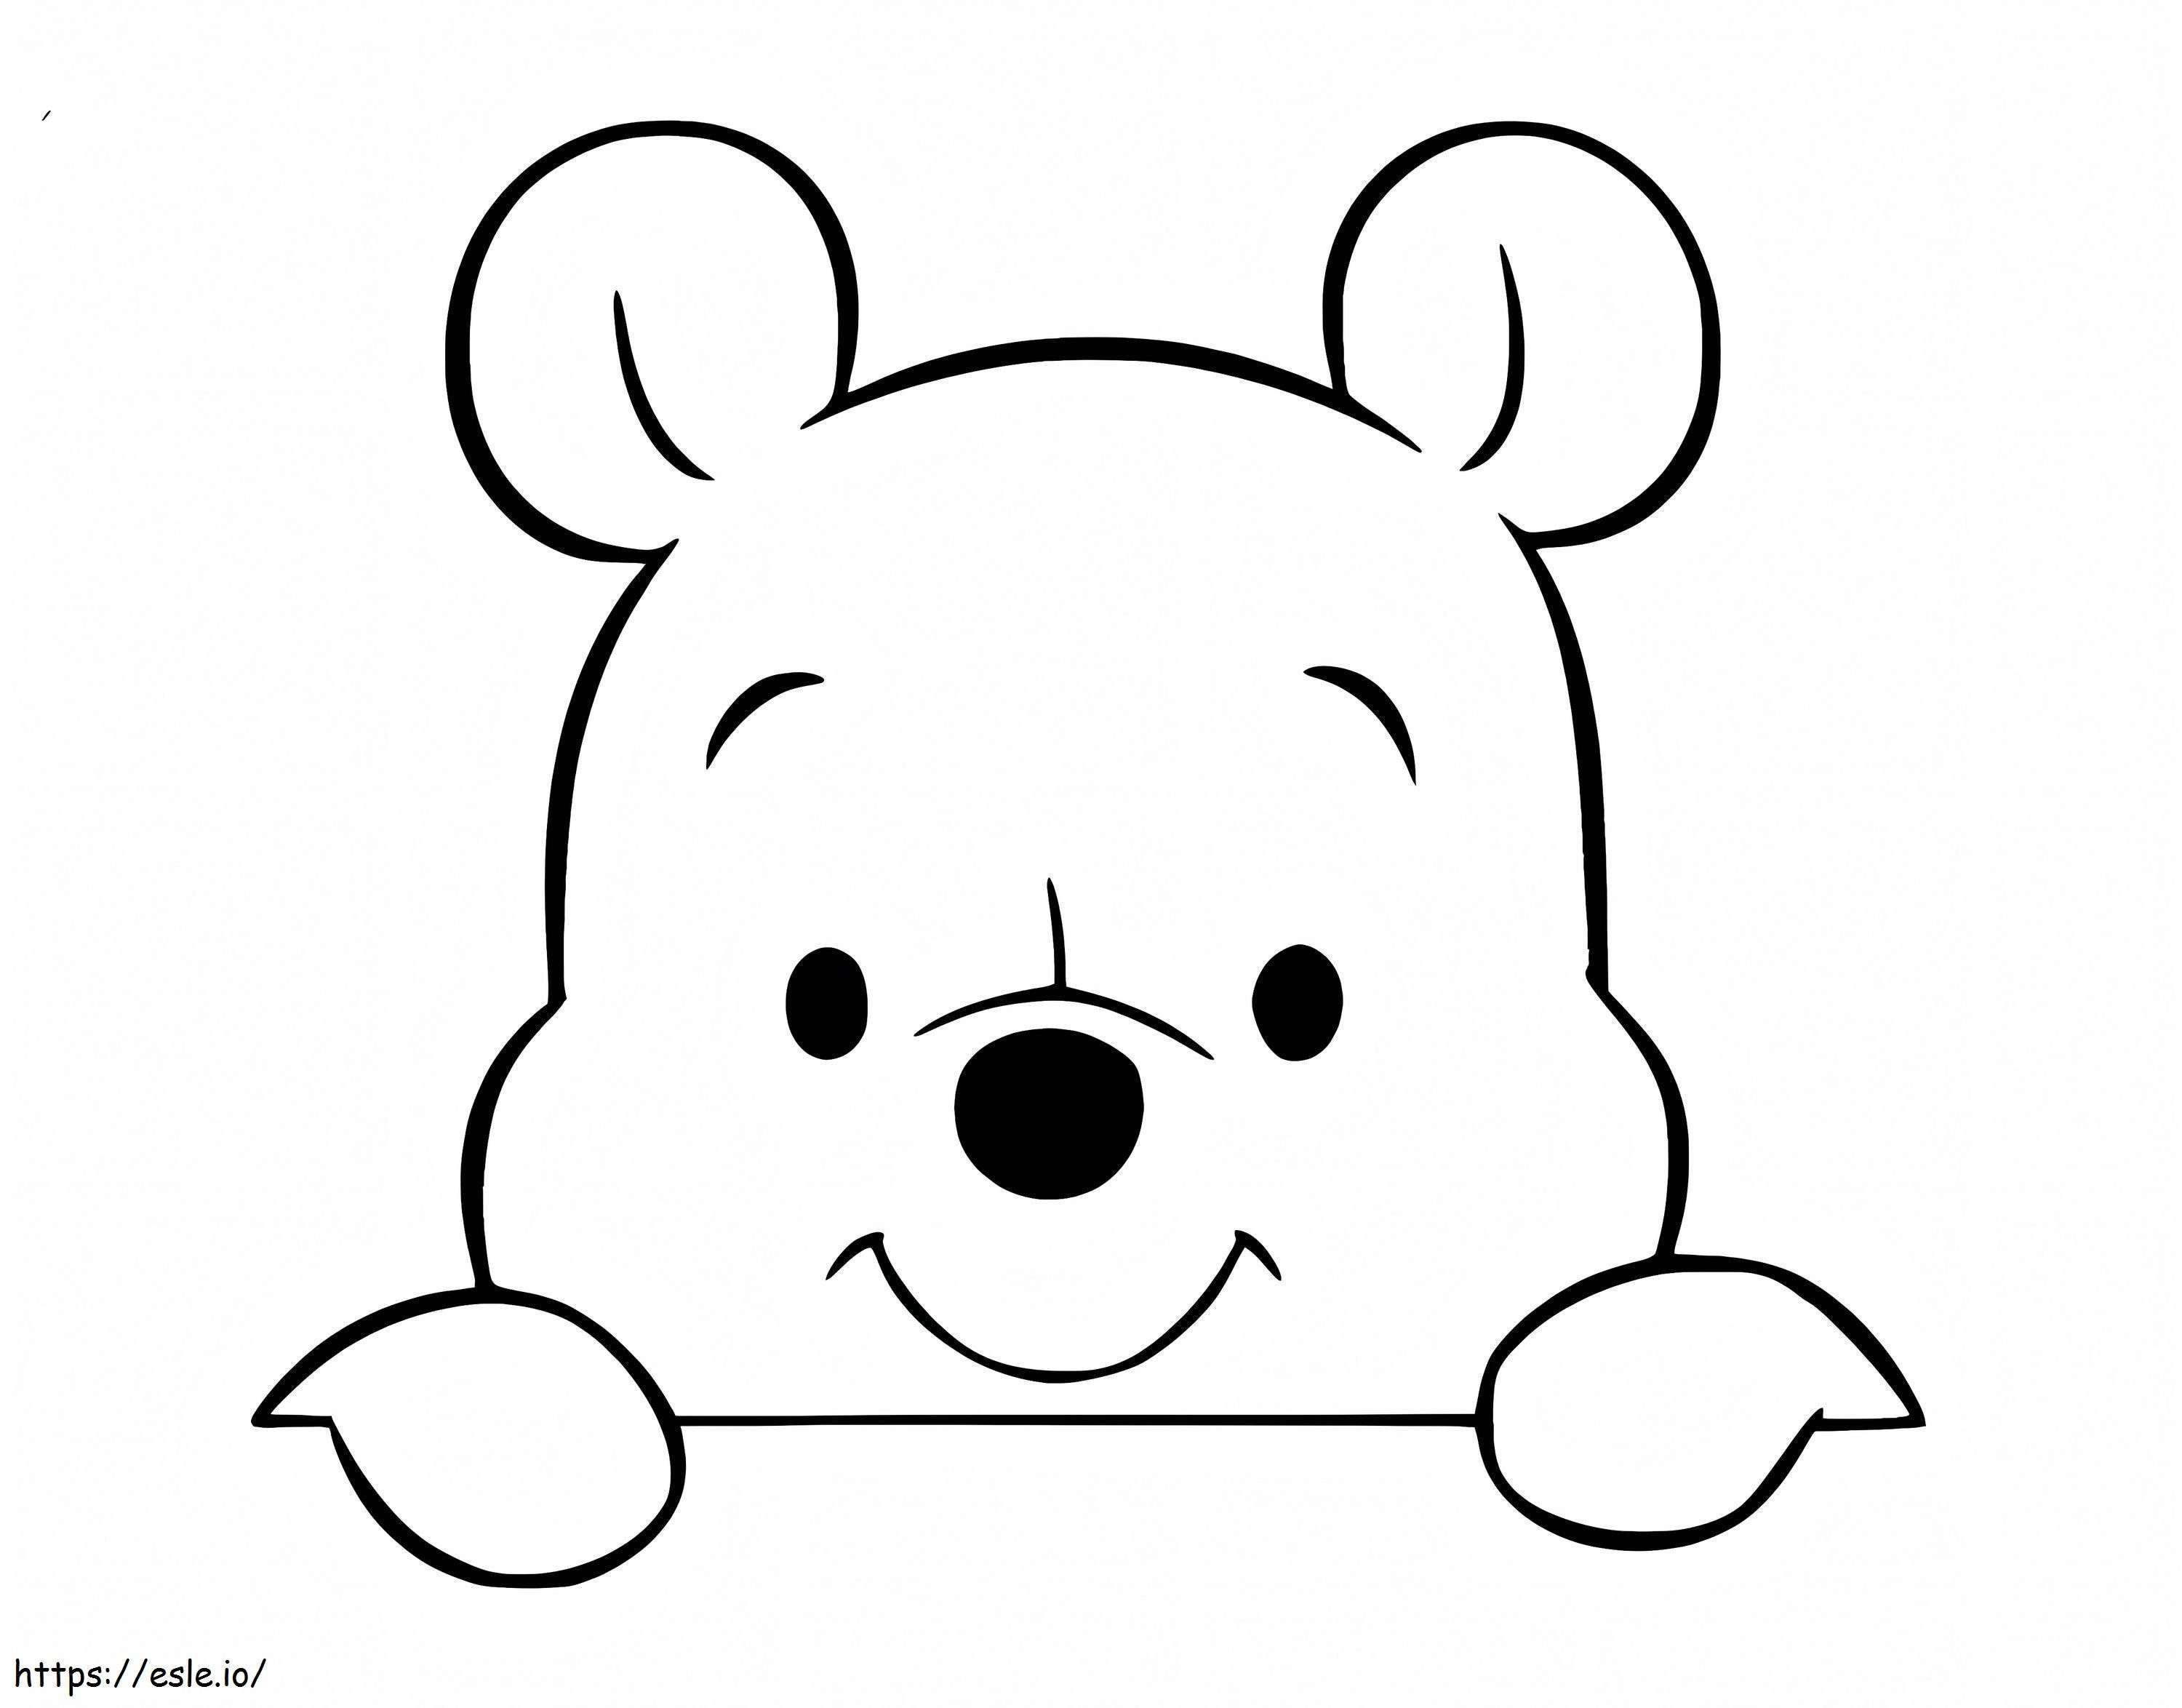 Retrato do Ursinho Pooh para colorir